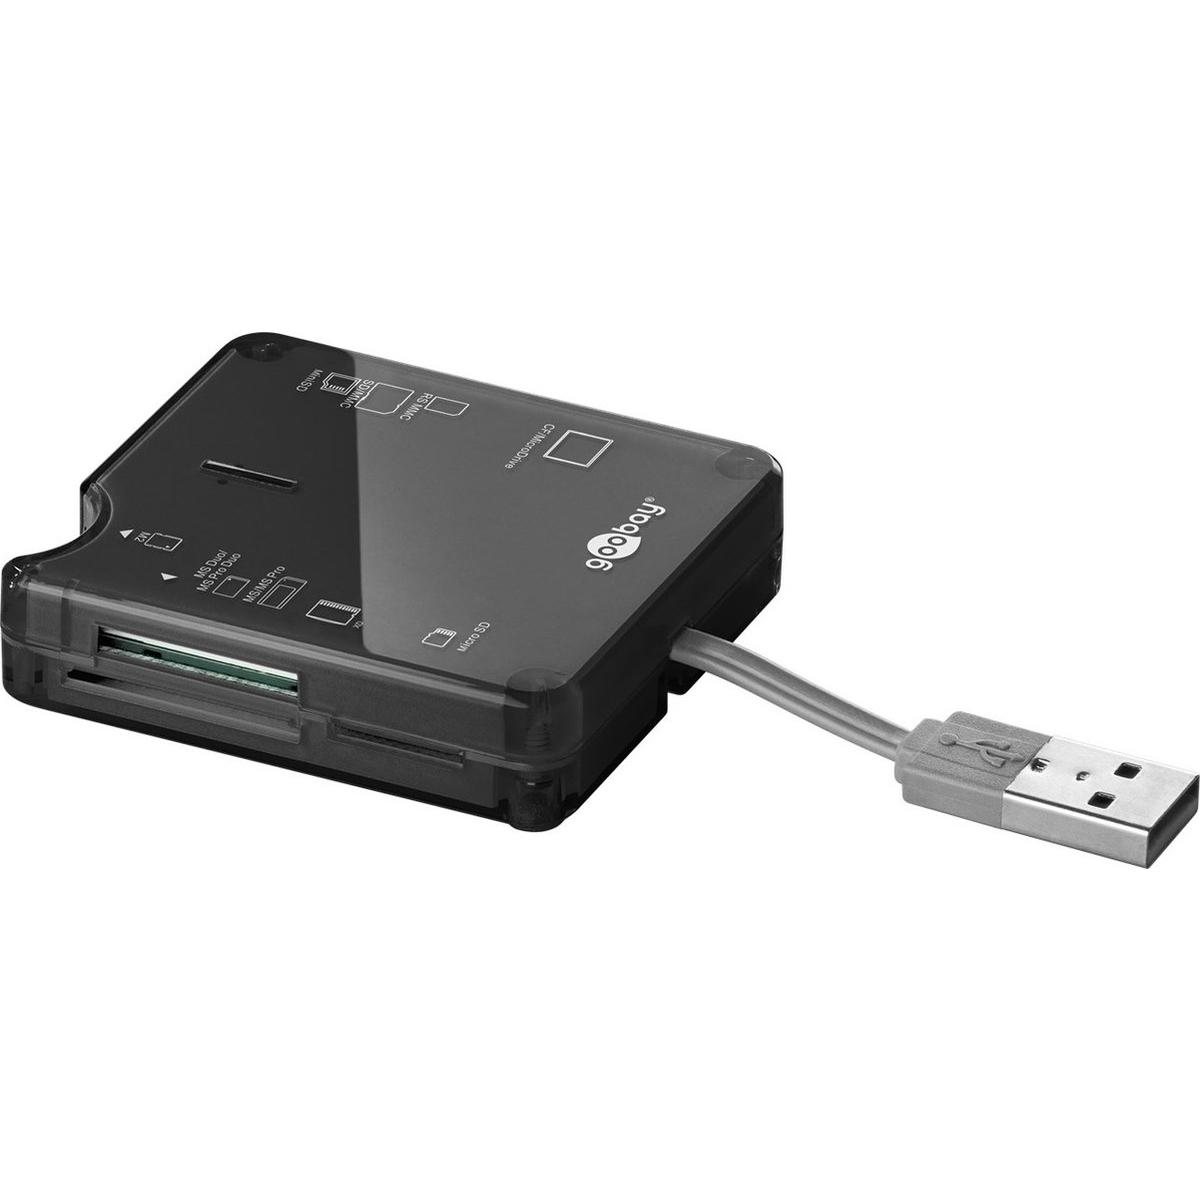 Image of USB 2.0 kaartlezer - Goobay